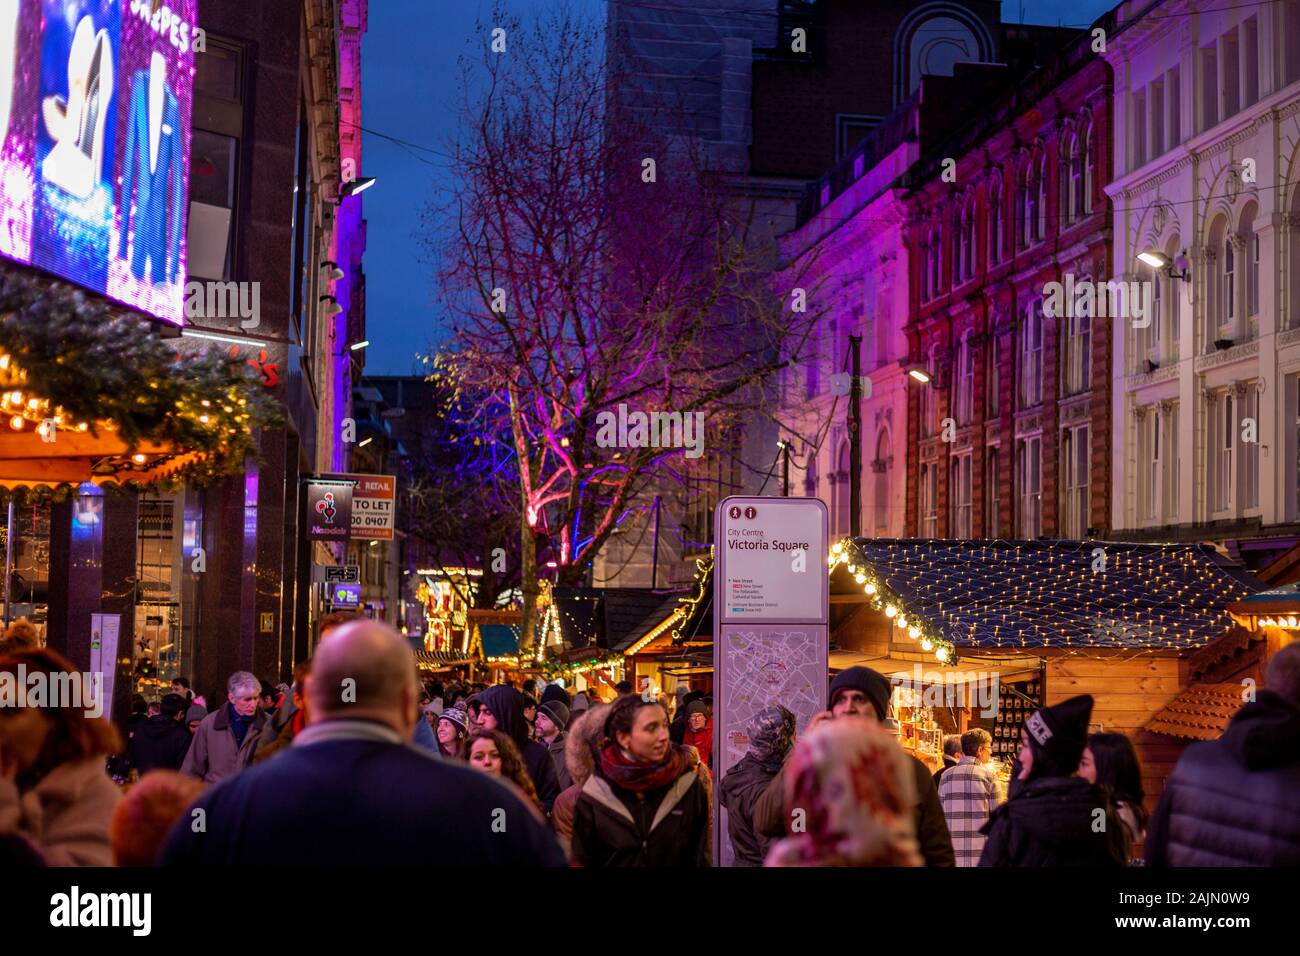 BIRMINGHAM, VEREINIGTES KÖNIGREICH - Dezember 15, 2019: Handel Marktstände am Victoria Square während der jährlichen Weihnachten Fraknkfurt Markt Stockfoto